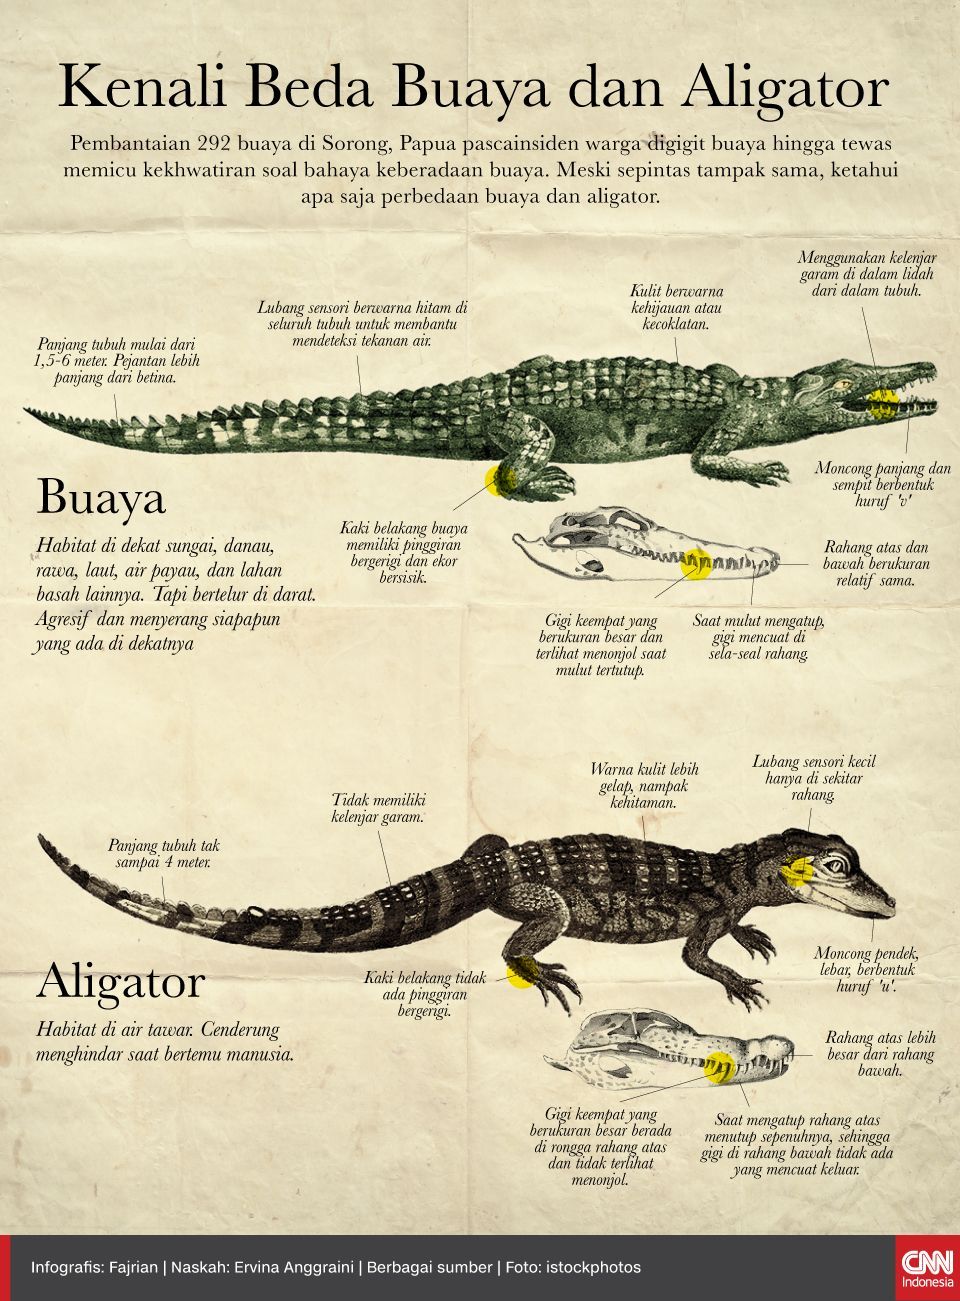 Infografis Kenali Beda Buaya dan Aligator